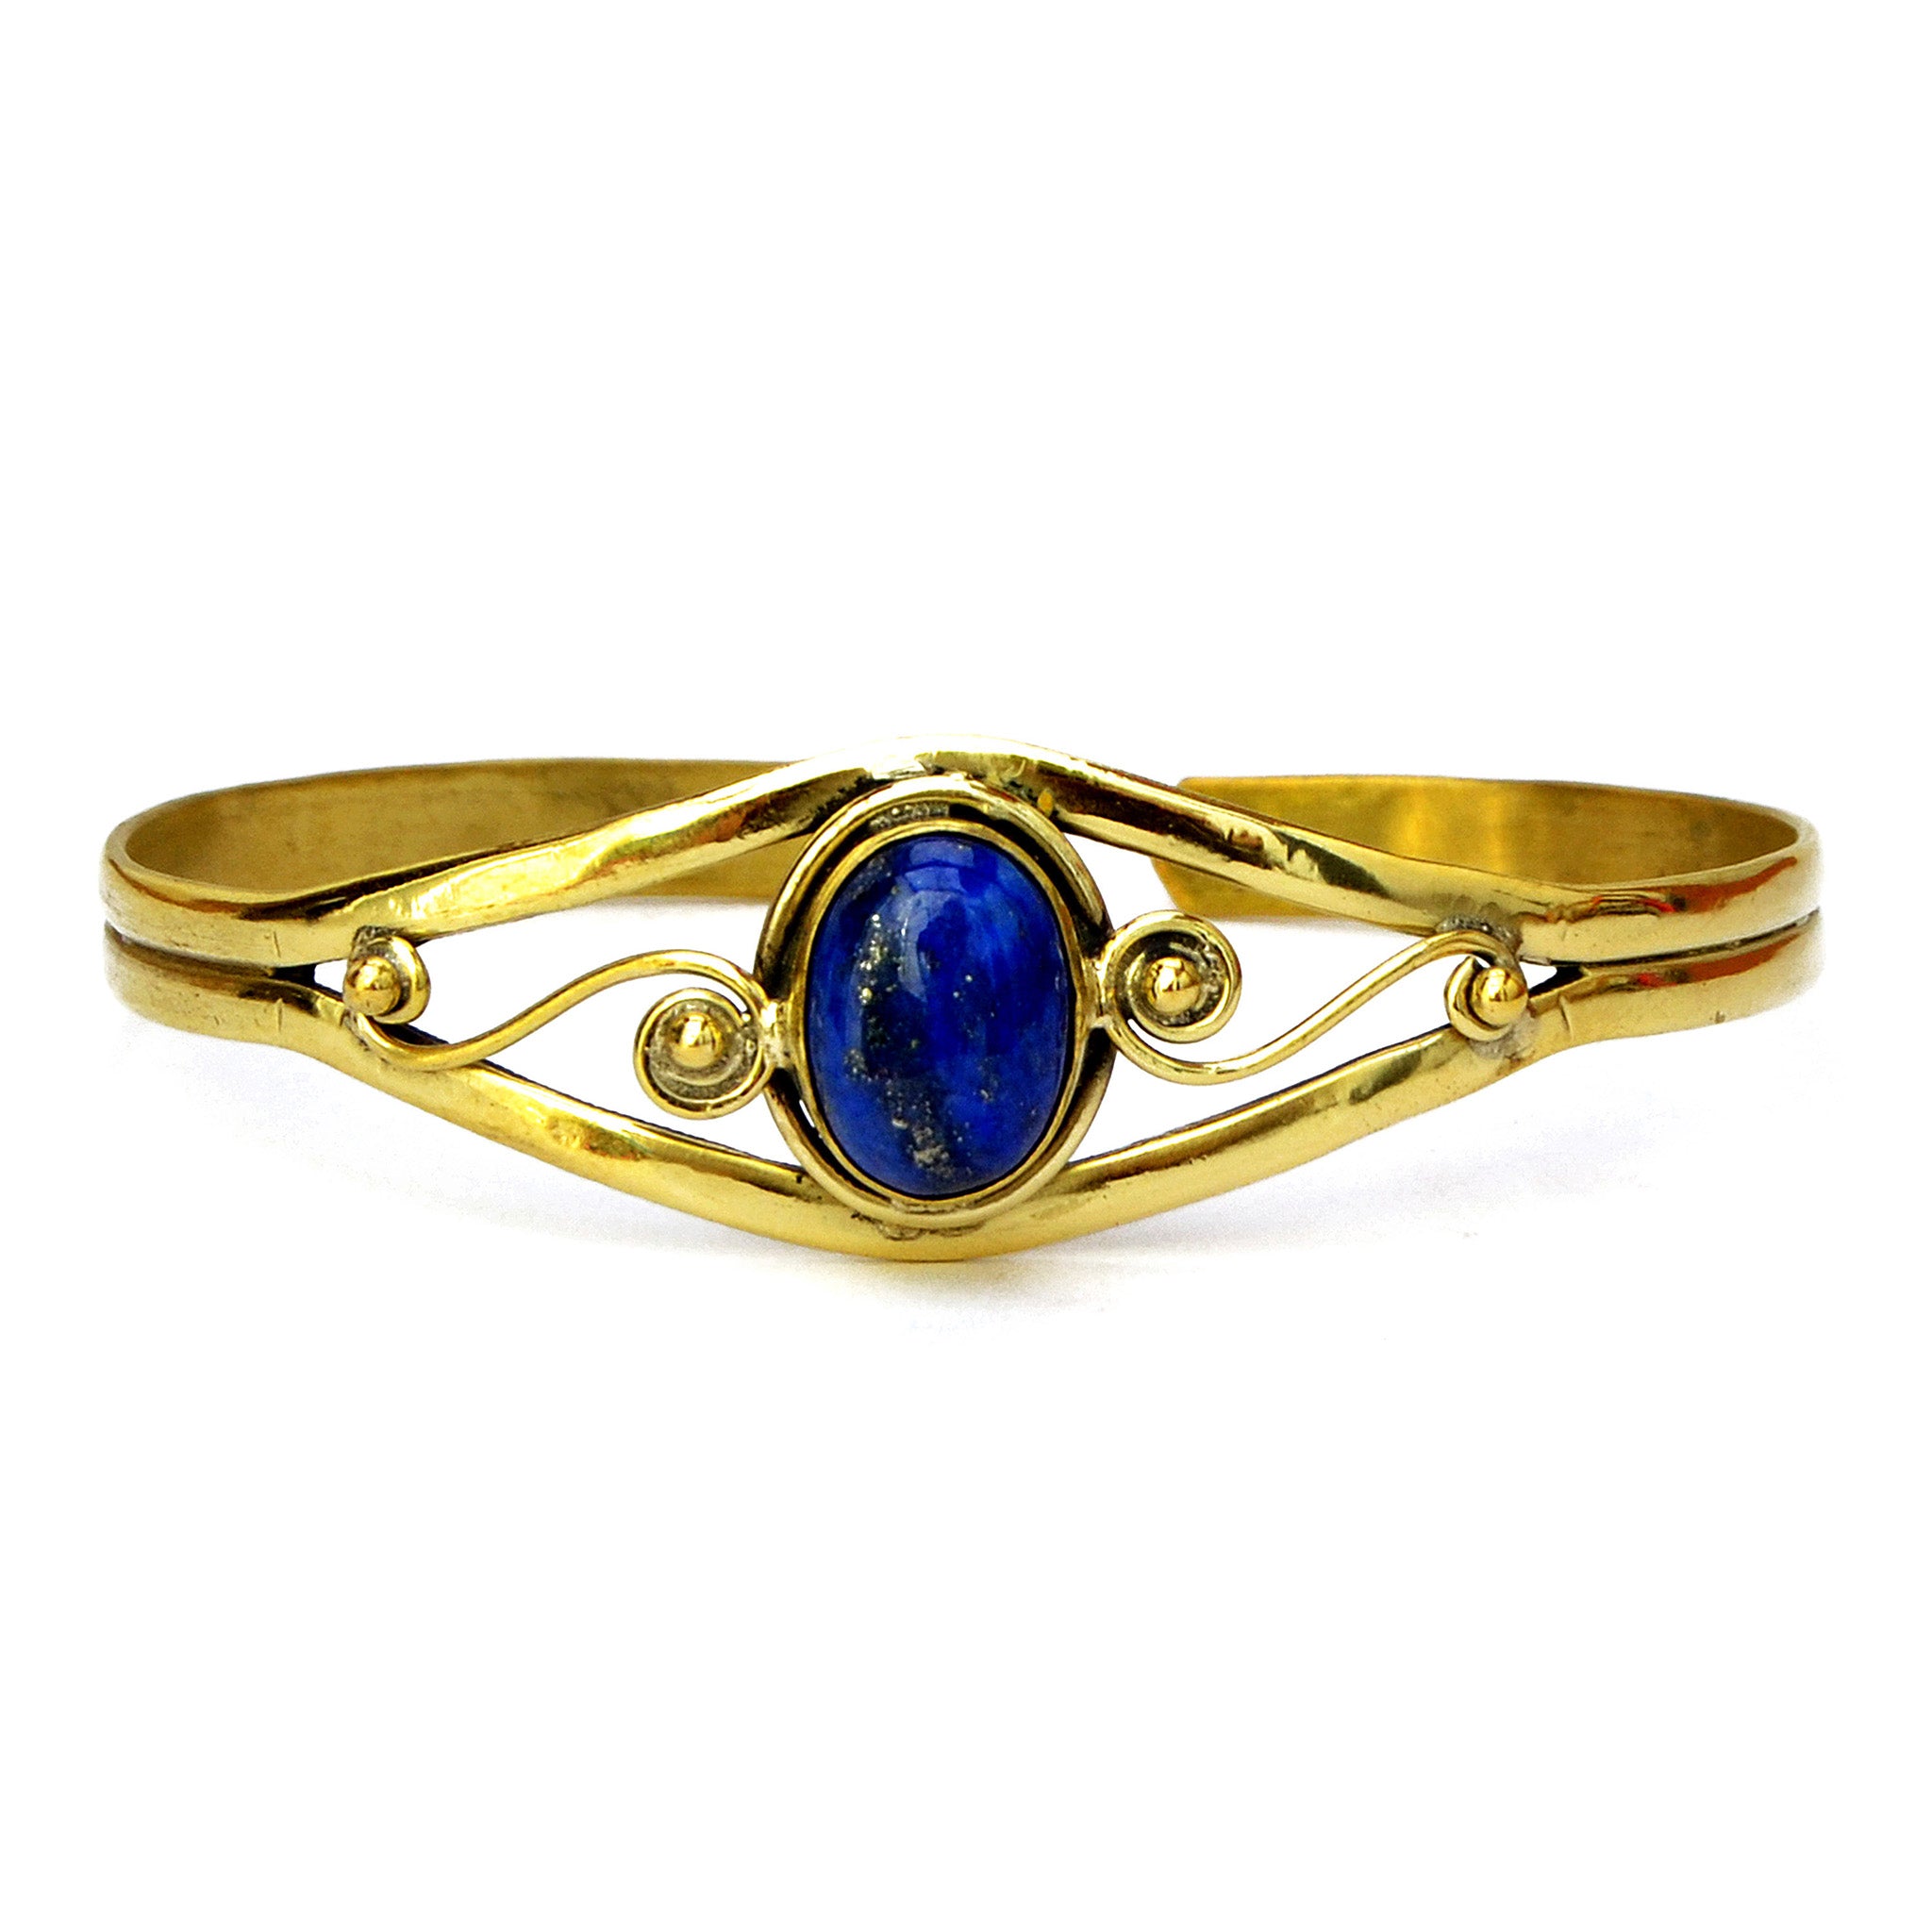 Brass cuff bracelet with lapis lazuli stone